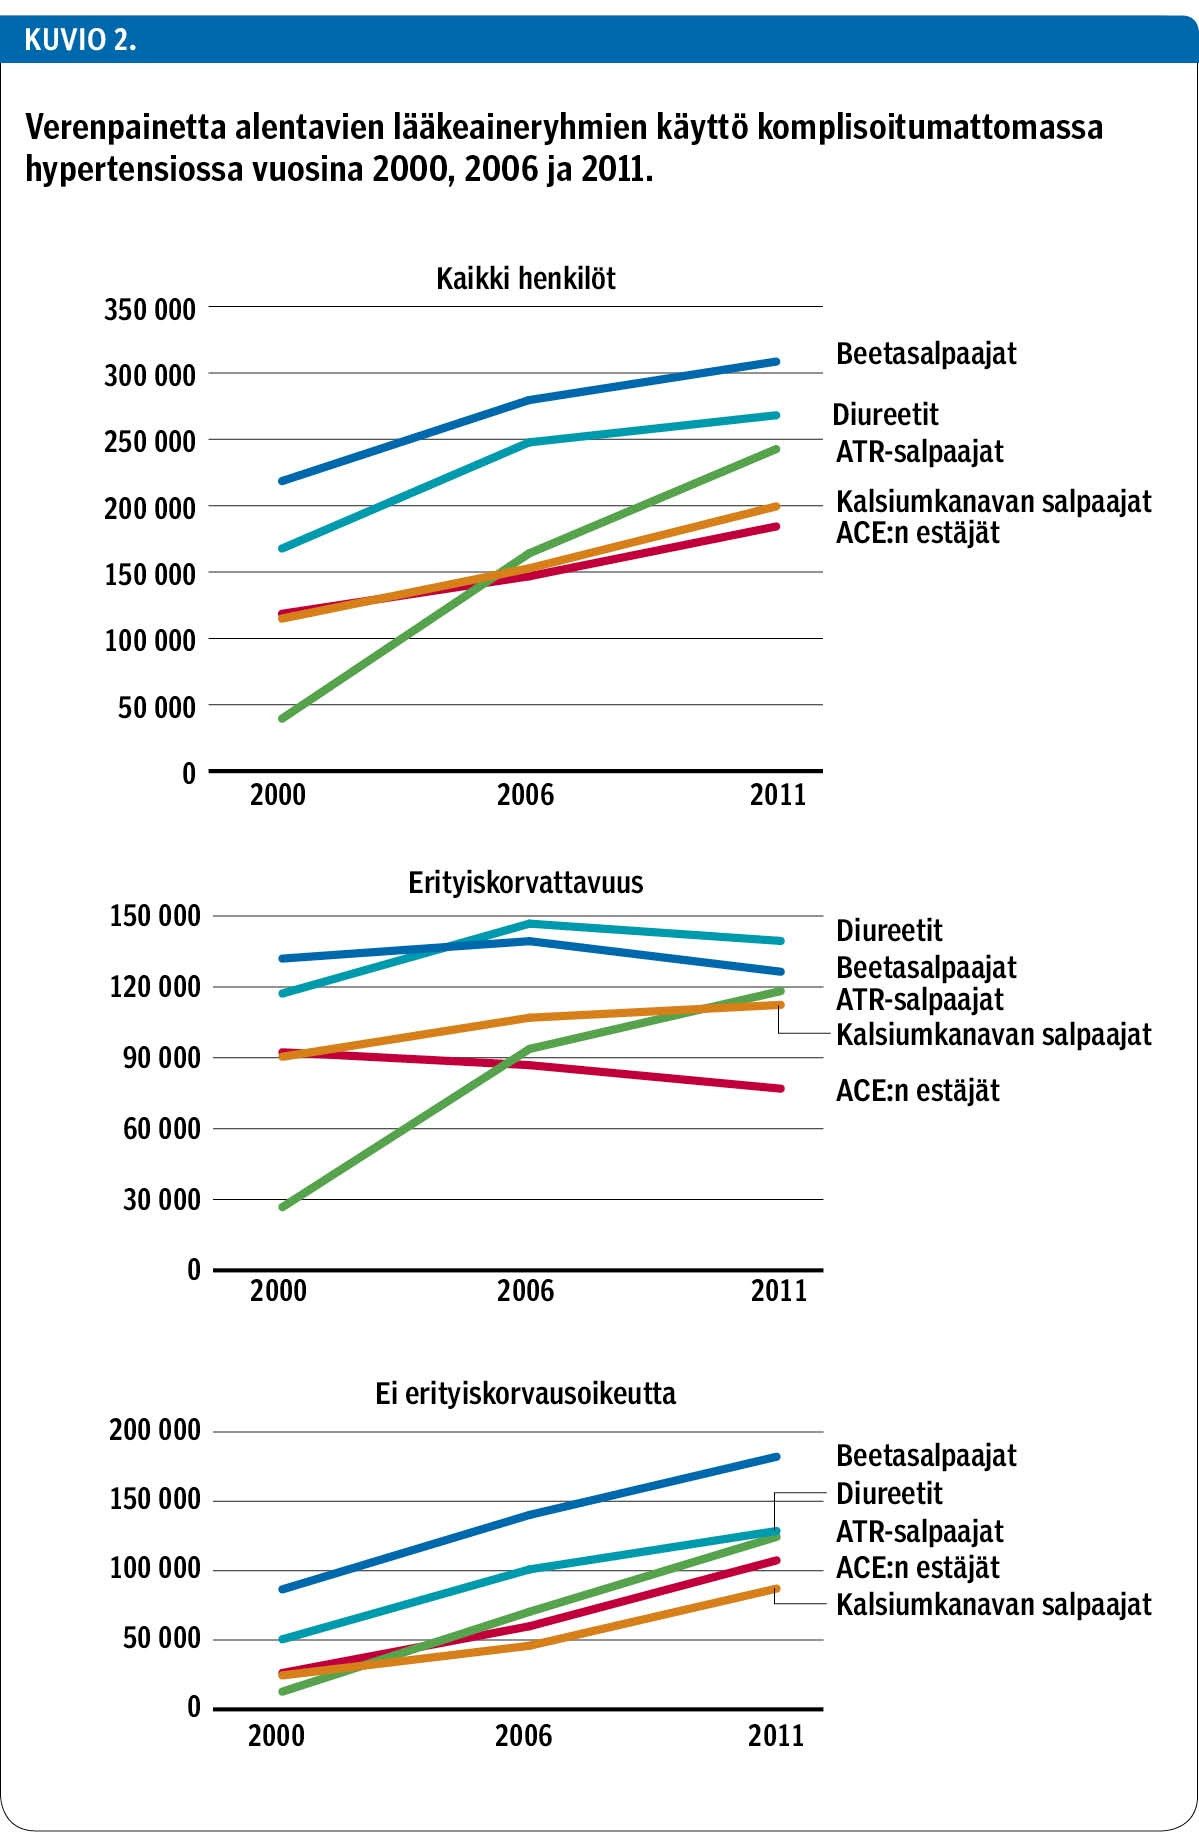 Verenpainetta alentavien lääkeaineryhmien käyttö komplisoitumattomassa hypertensiossa vuosina 2000, 2006 ja 2011.